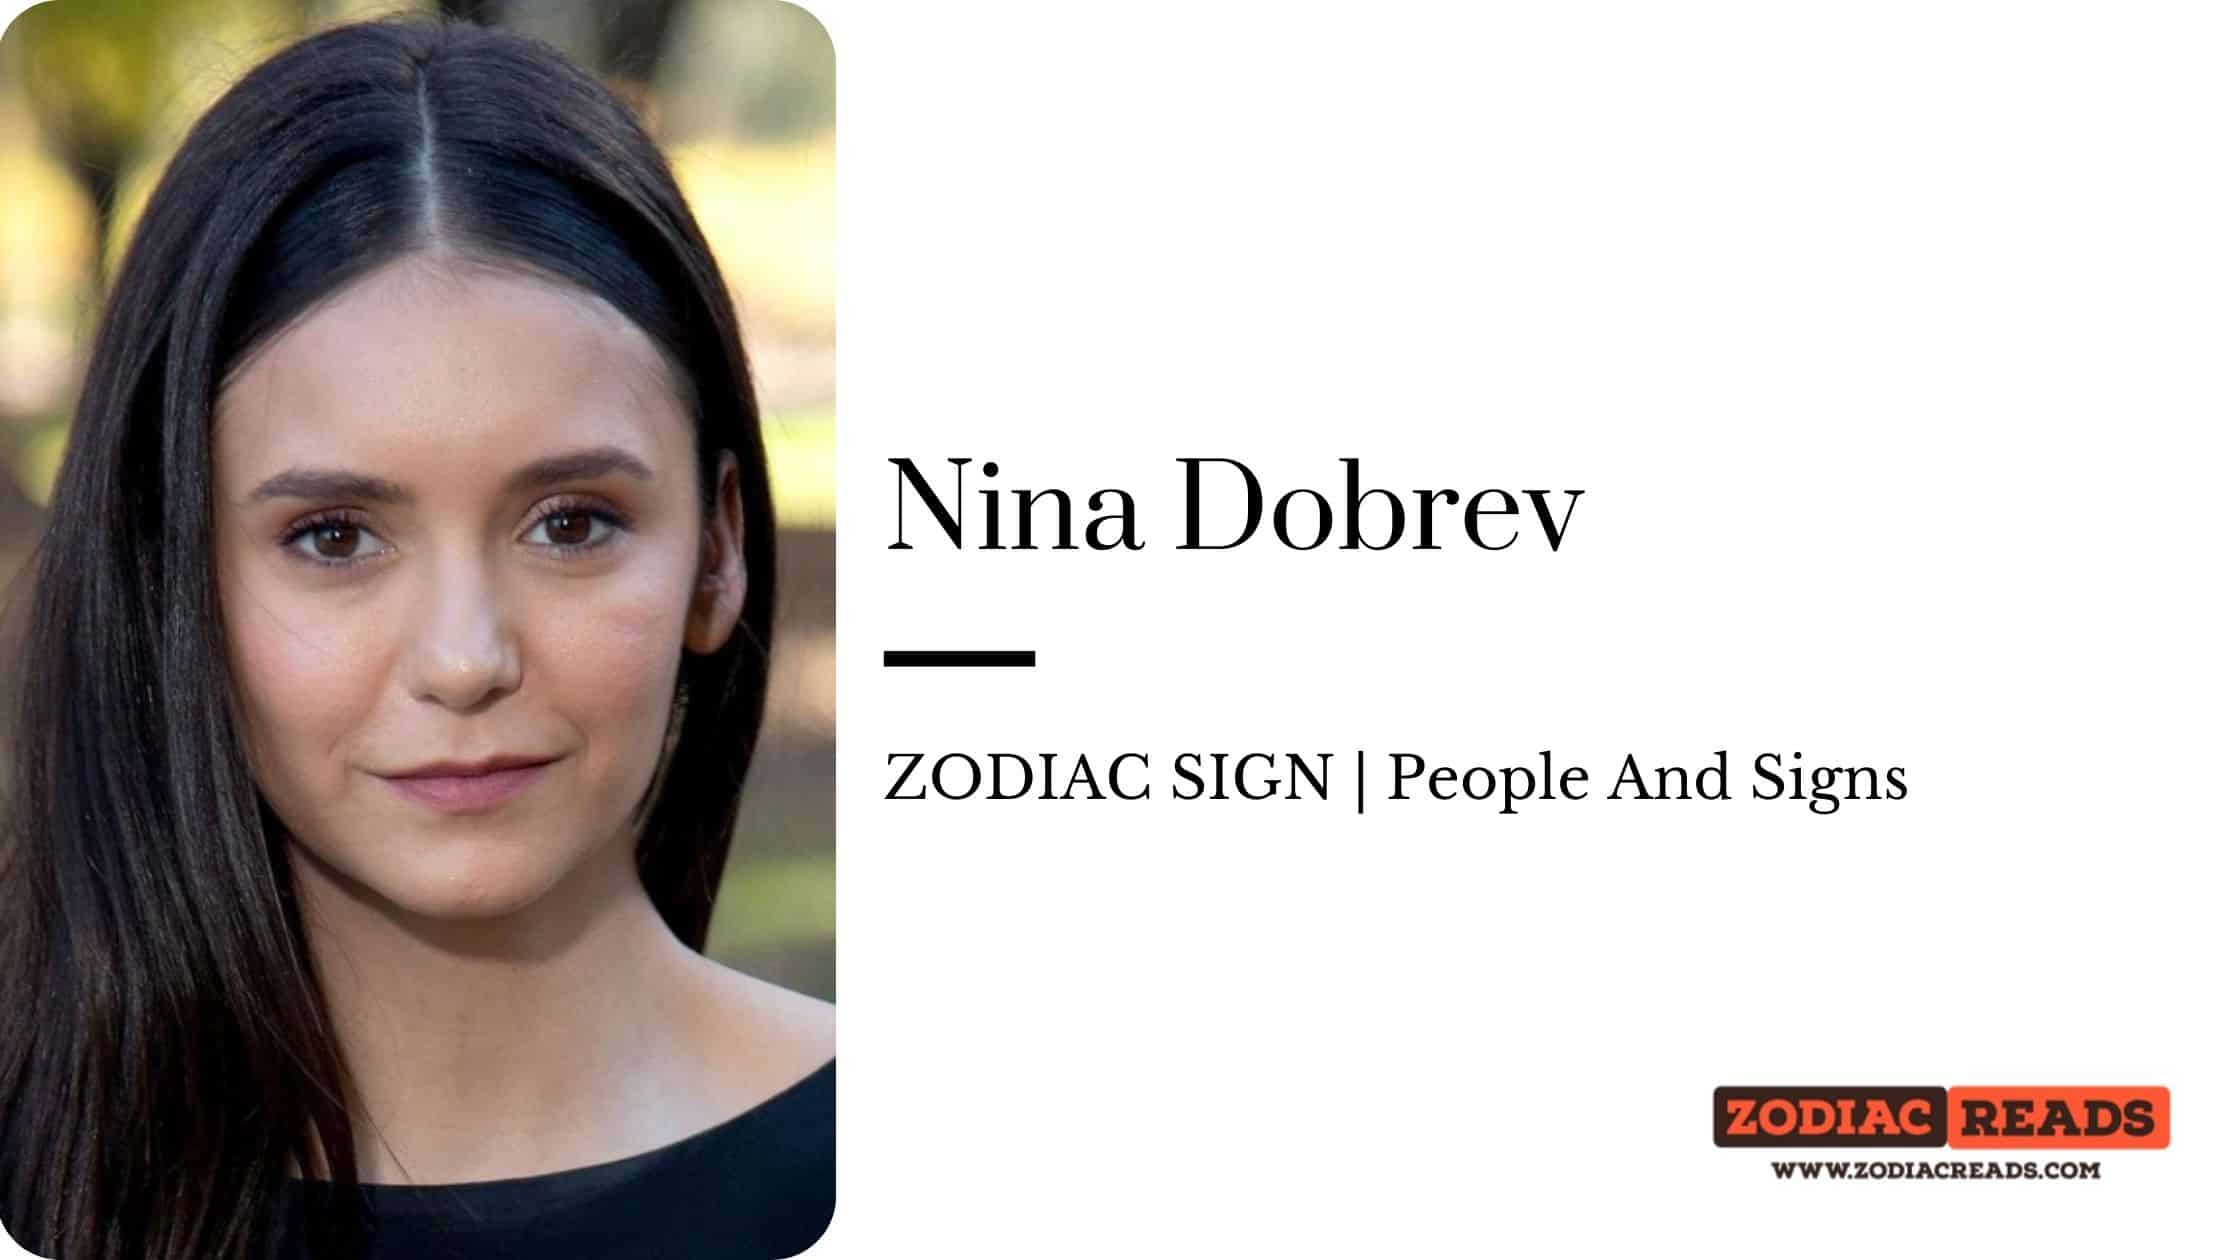 Nina Dobrev zodiac